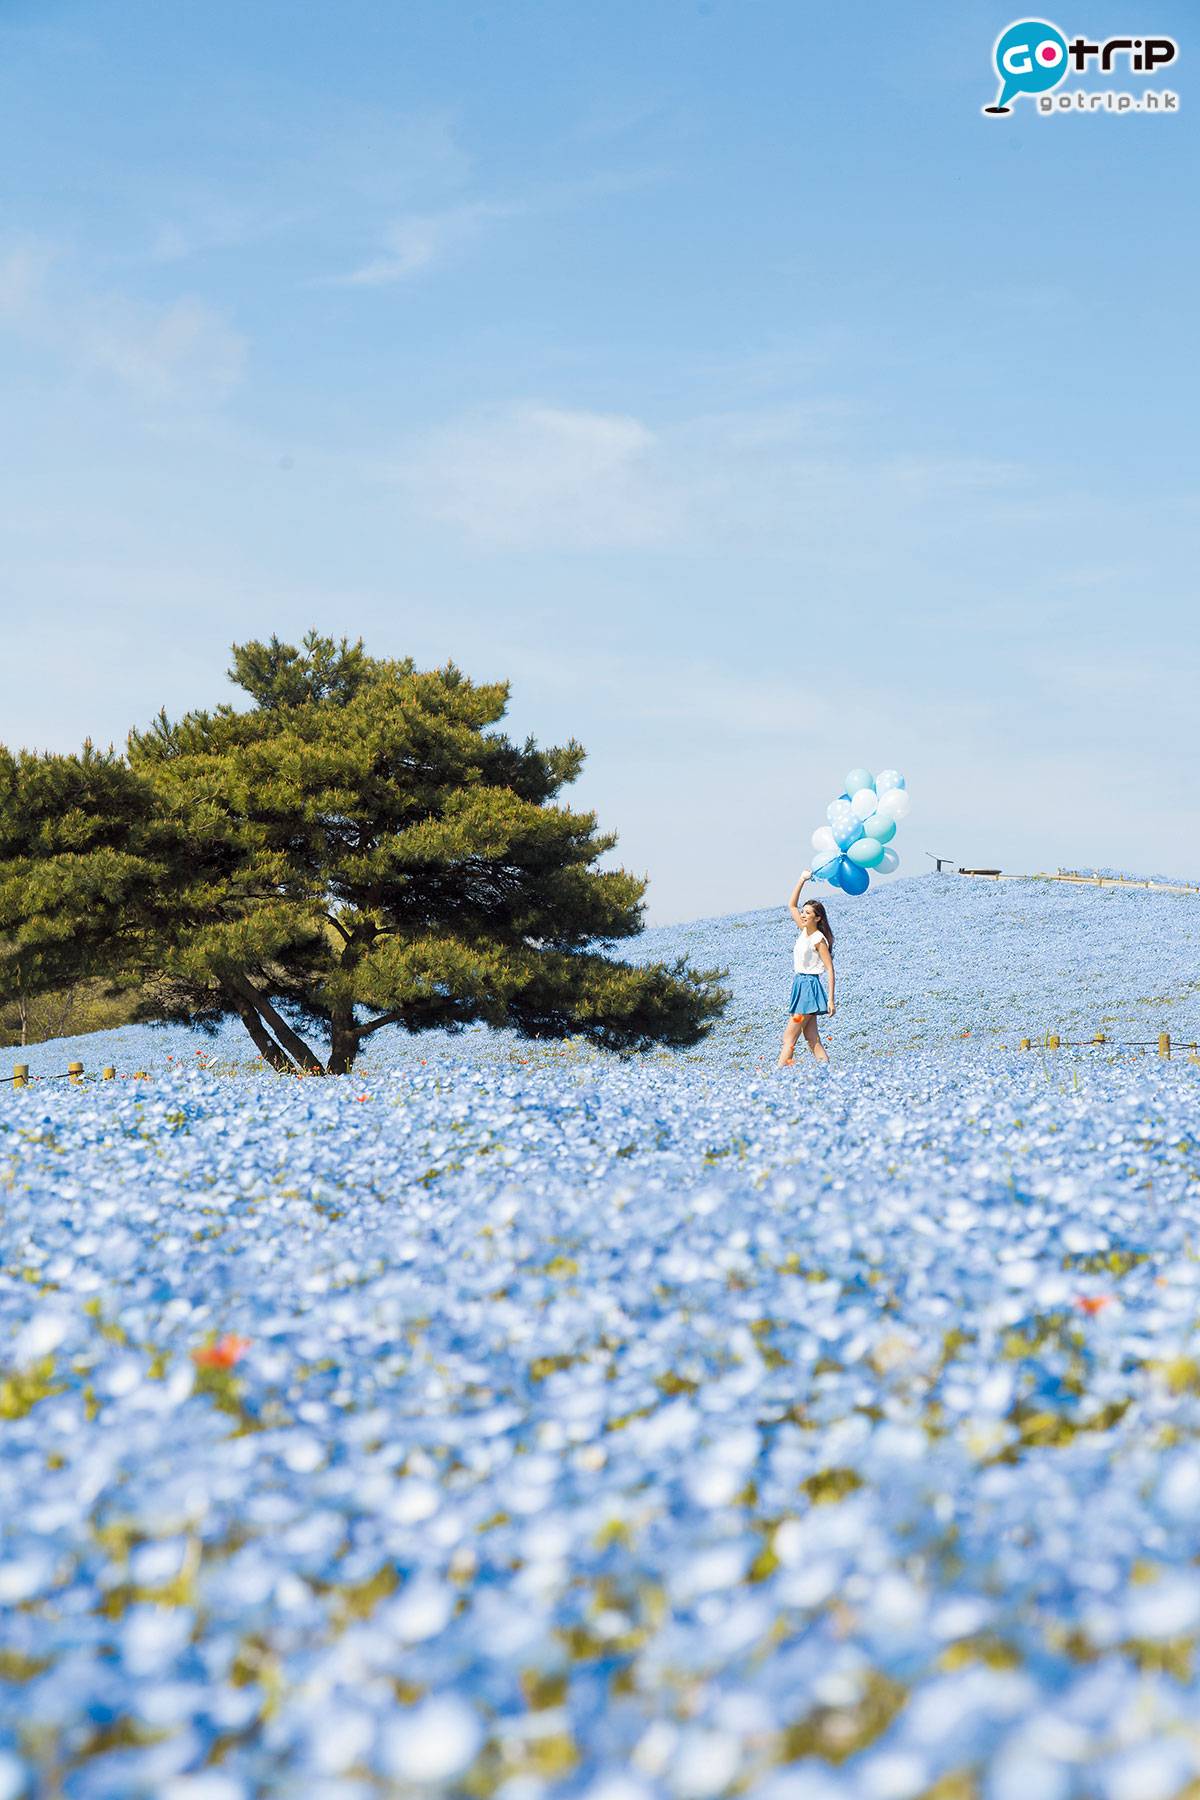 Fly！旅遊天書 壯觀的藍色花海，真名為琉璃唐草，每年4月盛放，但有機會因天氣而提早開花，出發前要查清楚。